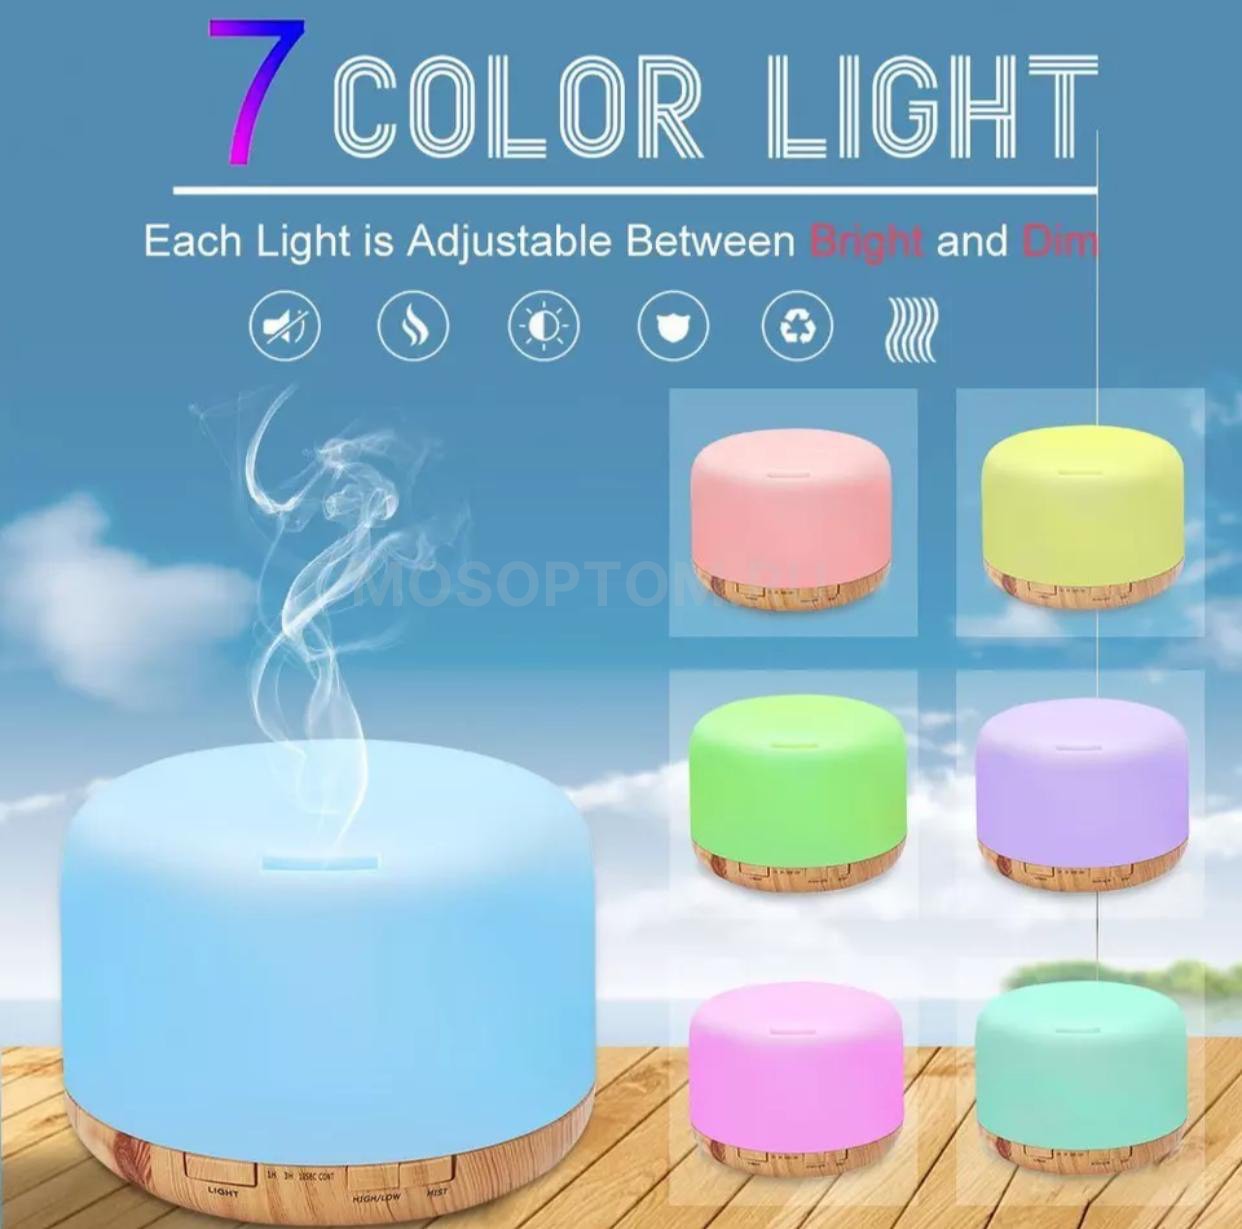 Ультразвуковой увлажнитель воздуха, аромадиффузор Aroma Diffuser с подсветкой 7 цветов, на деревянной подложке оптом - Фото №4